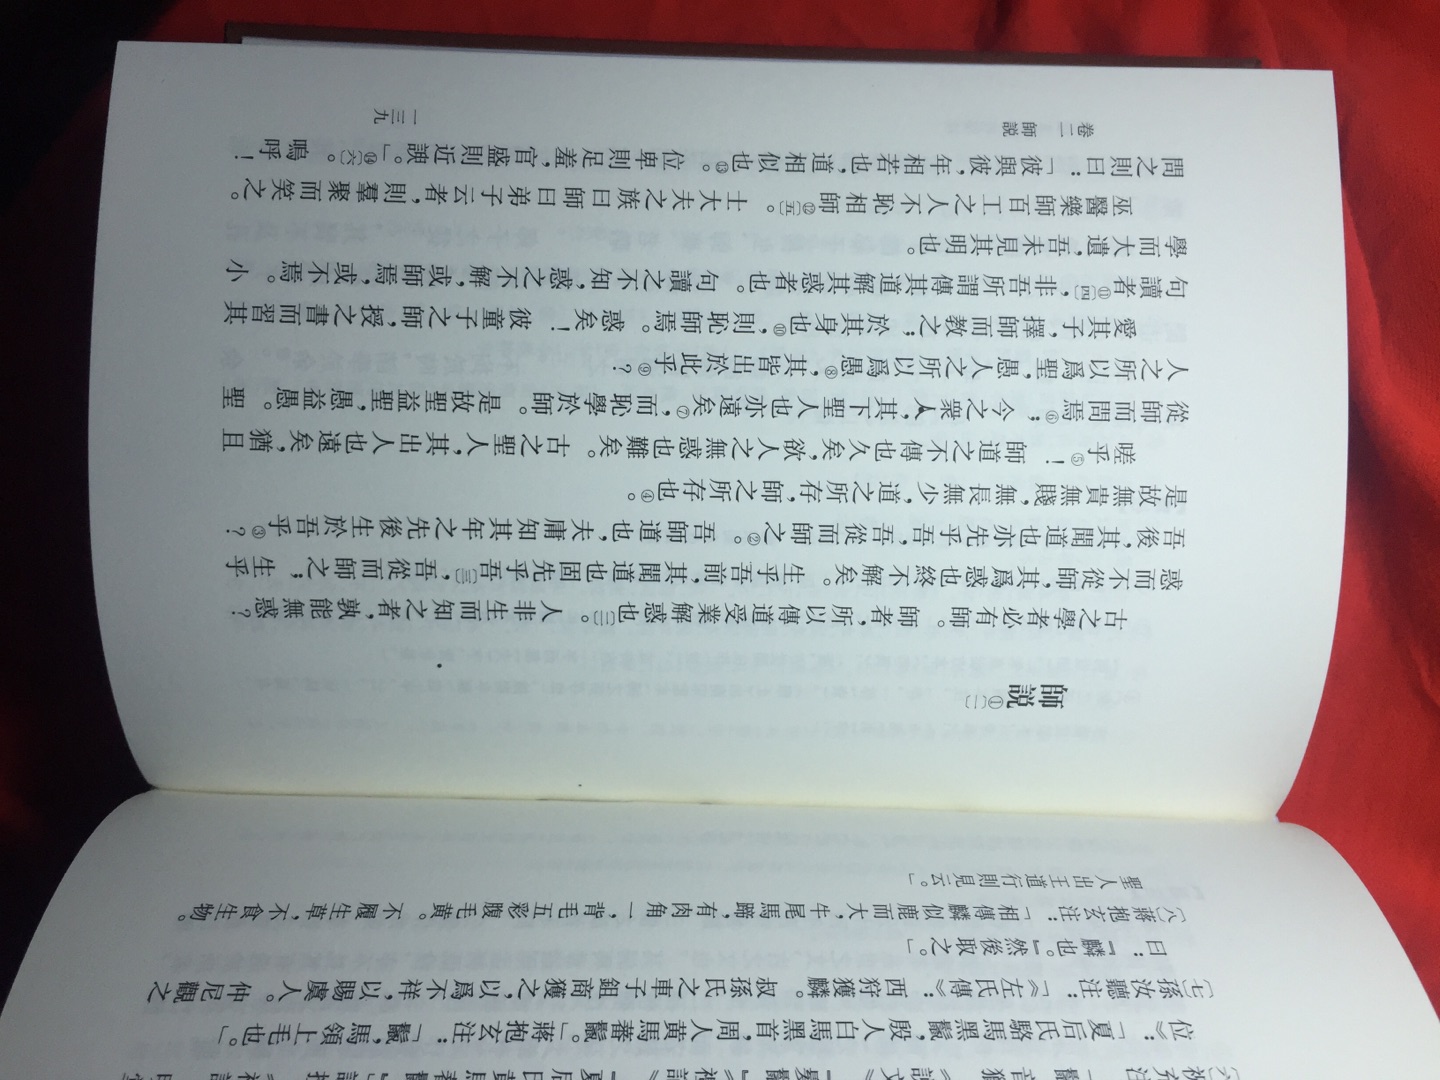 中华书局新出的《韩愈文集汇校笺注》典藏本到货了，还是原来的味道，但装订好像有点问题，不如李白那套紧凑，希望二印时好一些。